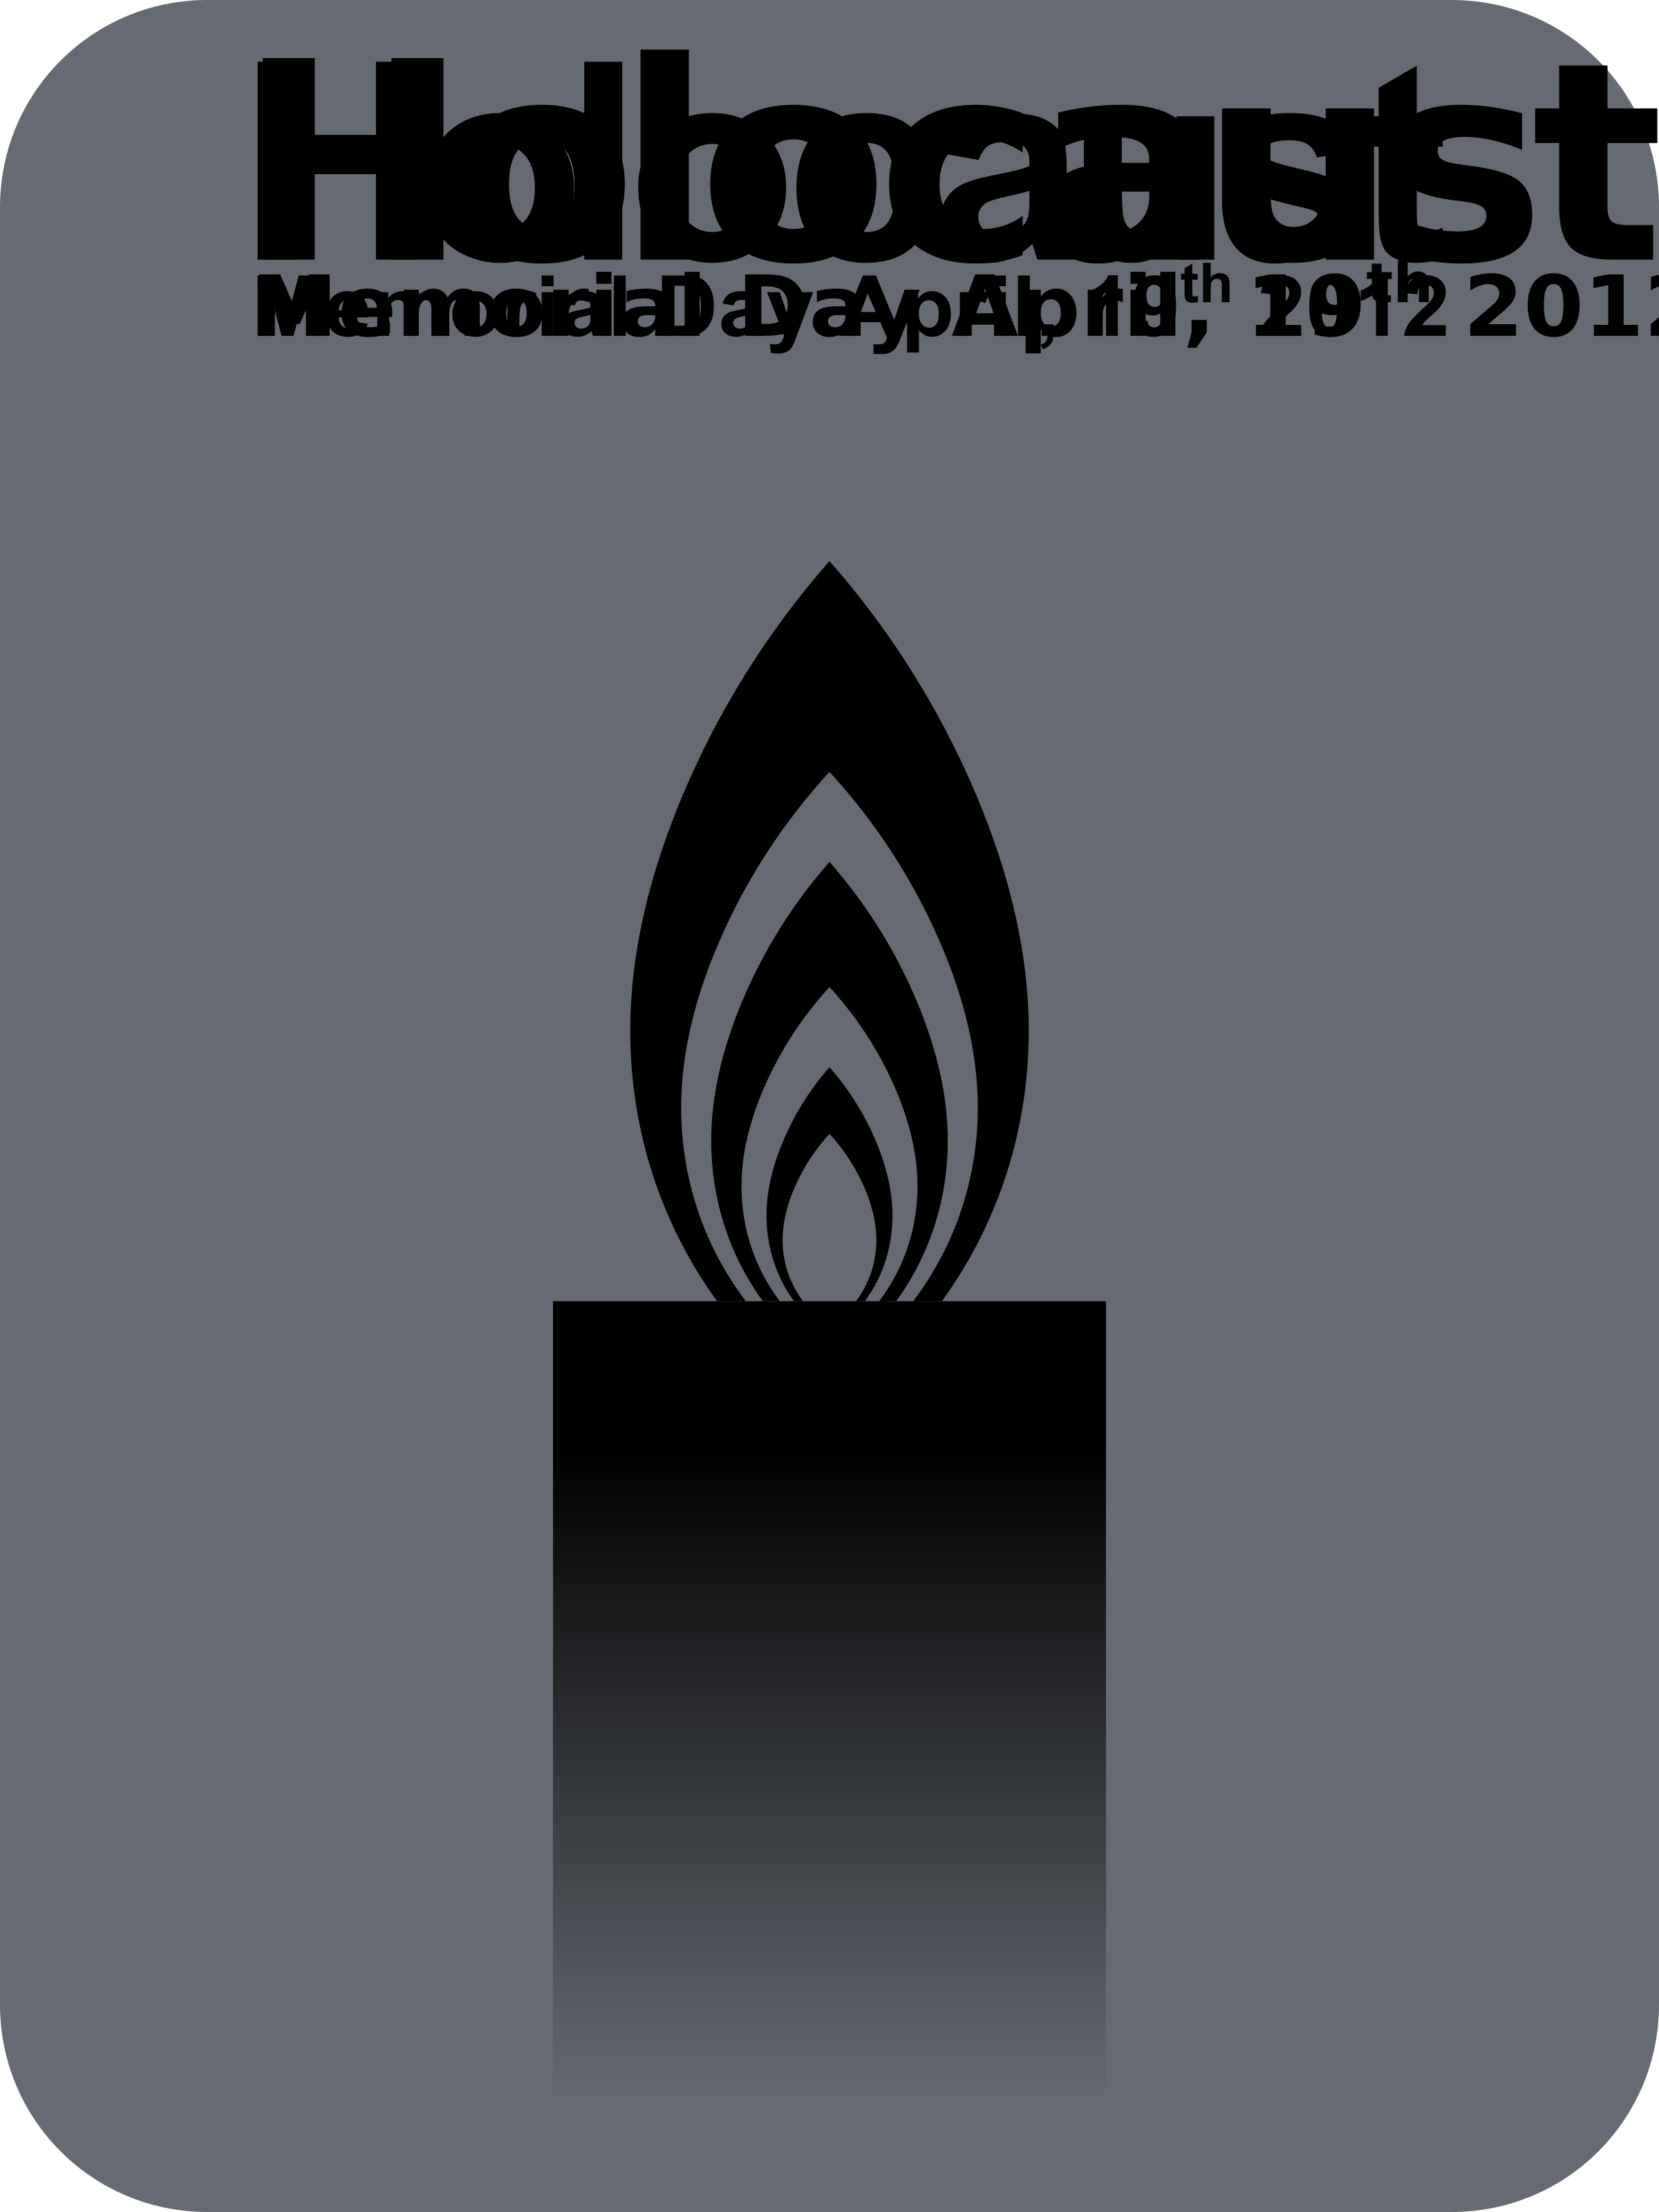 HolocaustMemorialDay 20120419 Clip arts